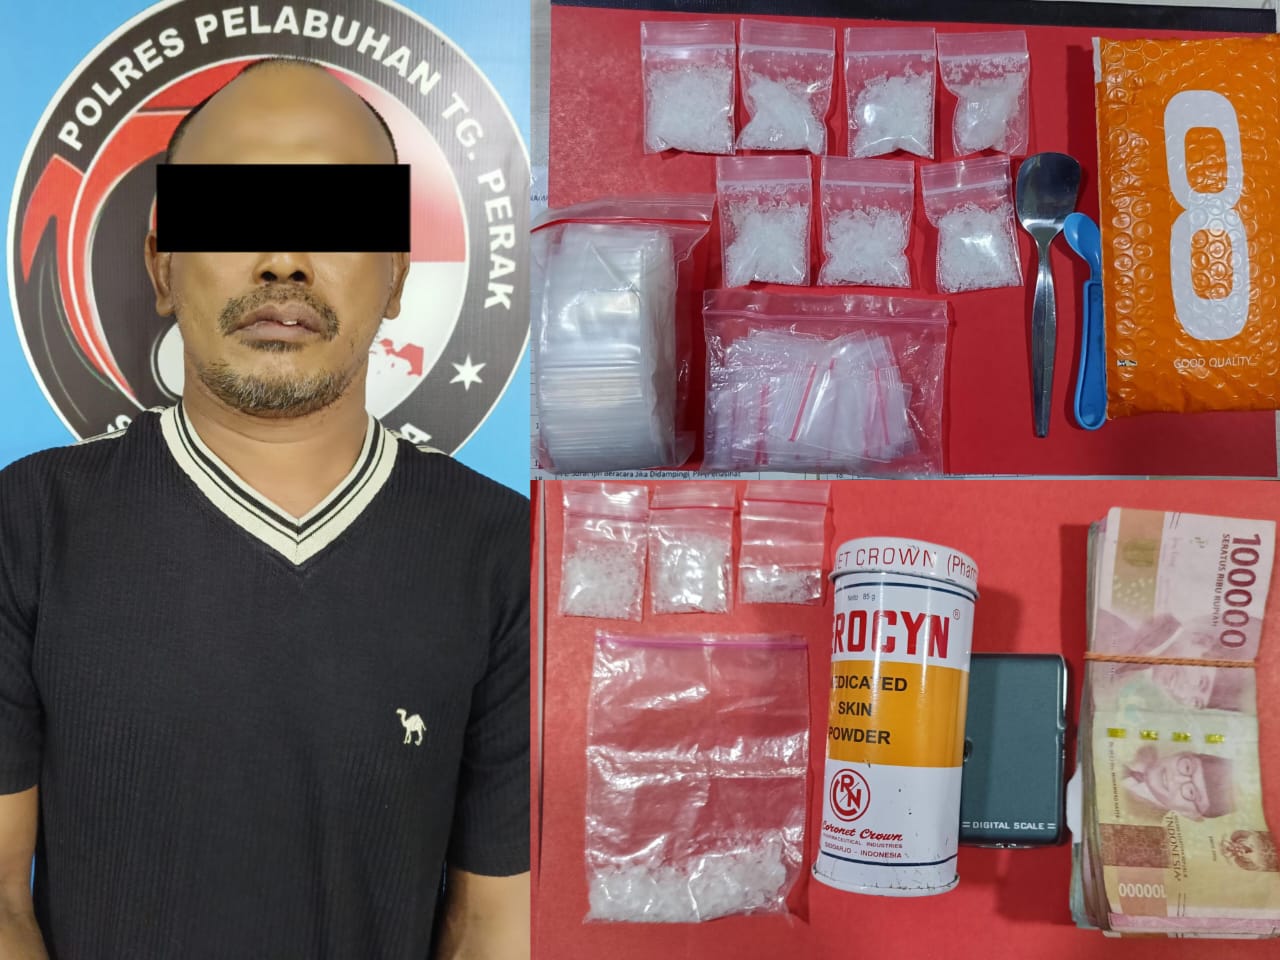 Pengedar Sabu di Surabaya Ditangkap, Sembunyikan 11 Poket Sabu di Bungkus LCD dan Botol Bedak